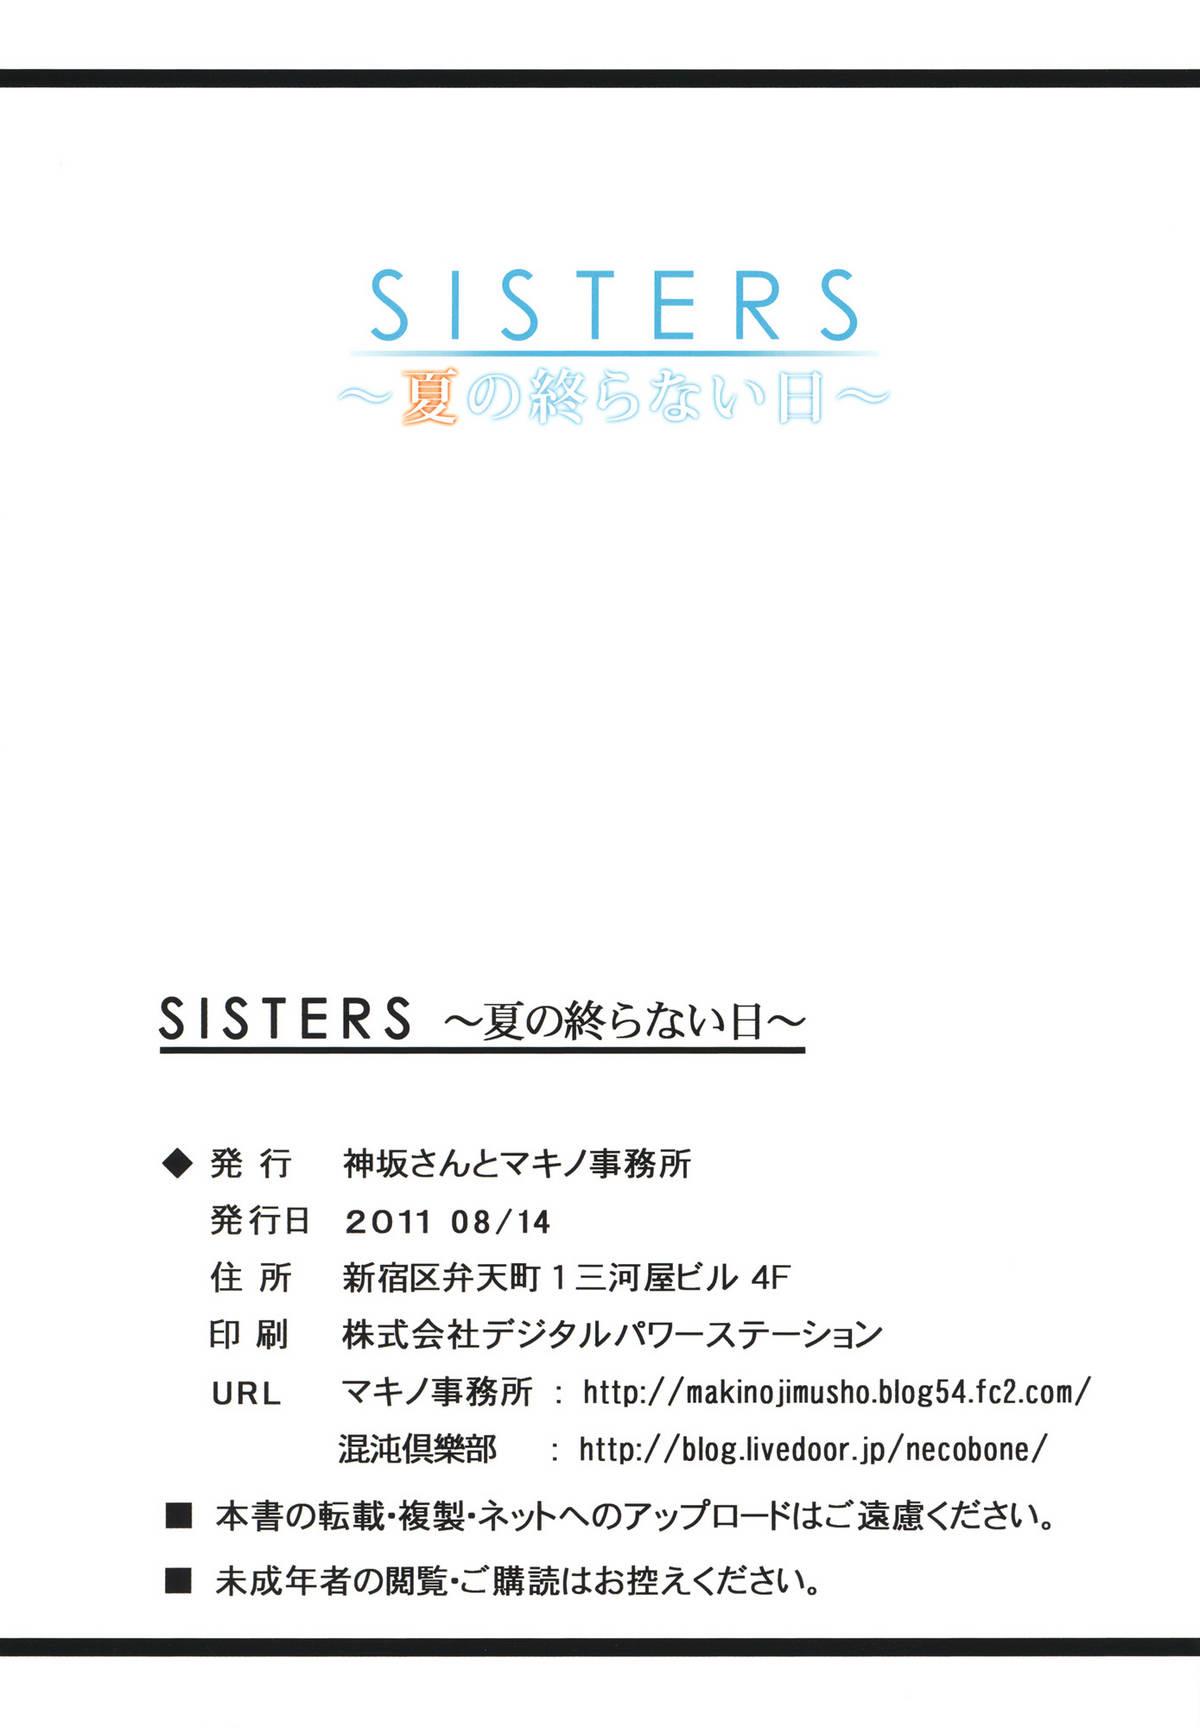 Hot SISTERS - Kakusareta Kioku, Natsu no Owaranai Hi - Sisters natsu no saigo no hi Liveshow - Page 34